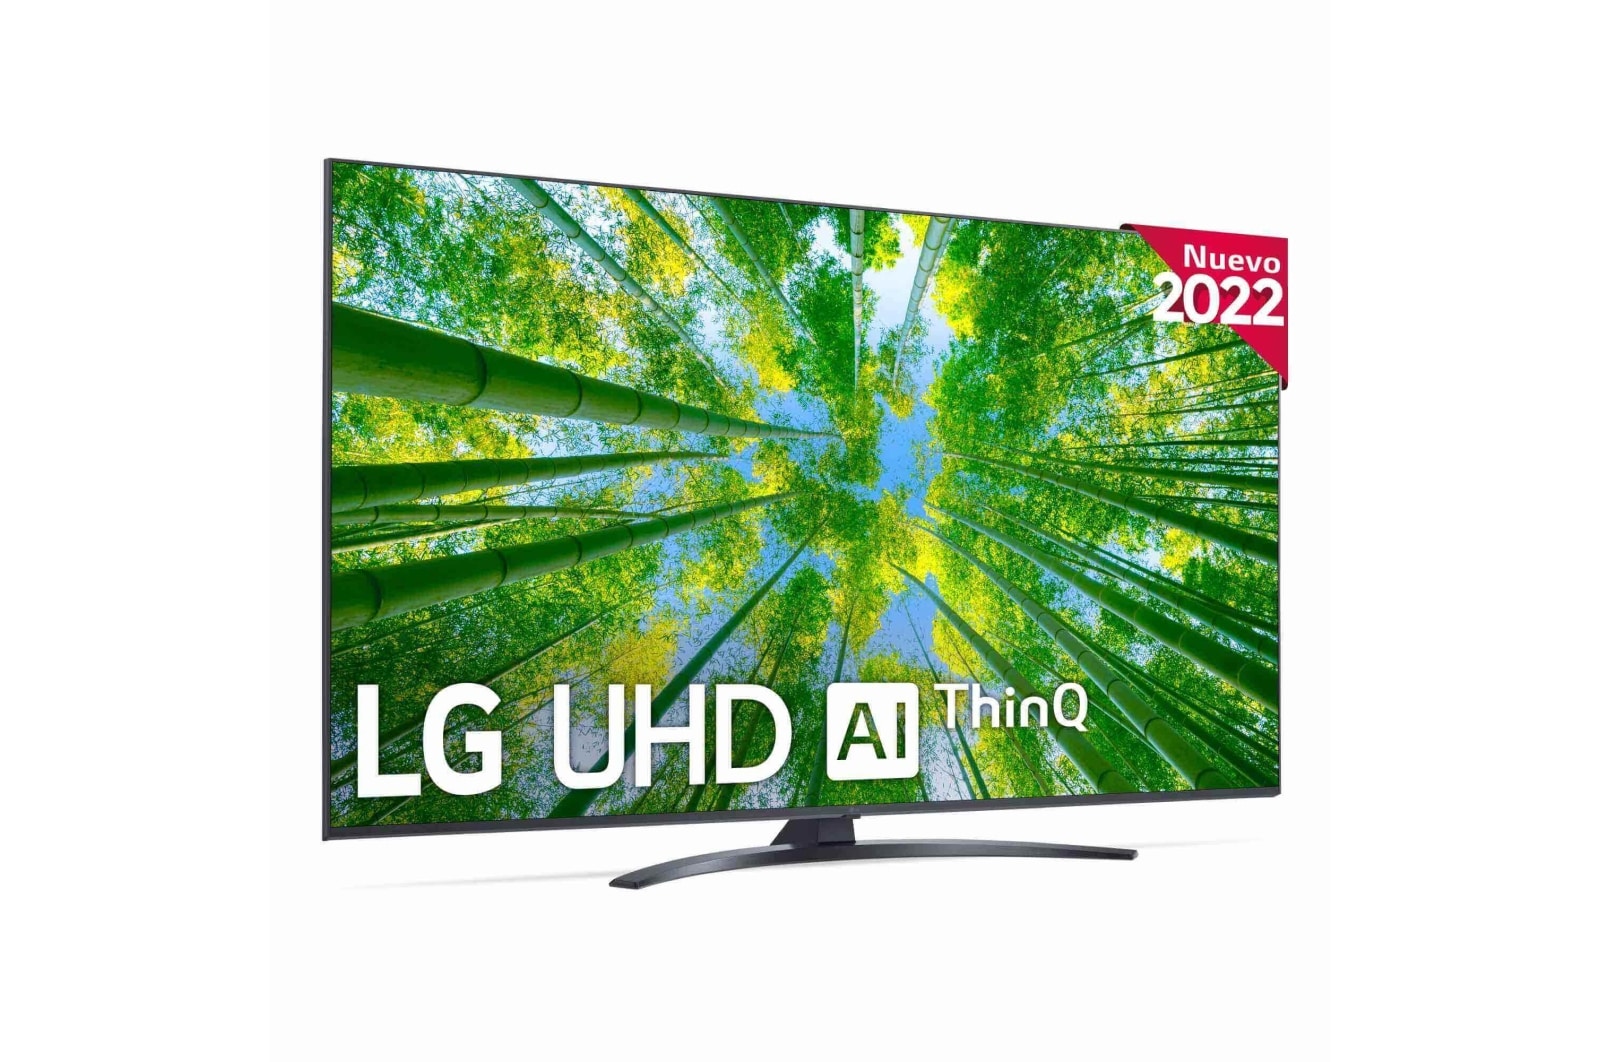 LG Televisor LG 4K UHD, de Gran Potencia 4K α5 Gen 5, compatible con formatos HDR 10, HLG y HGiG, Smart TV webOS22. | LG España